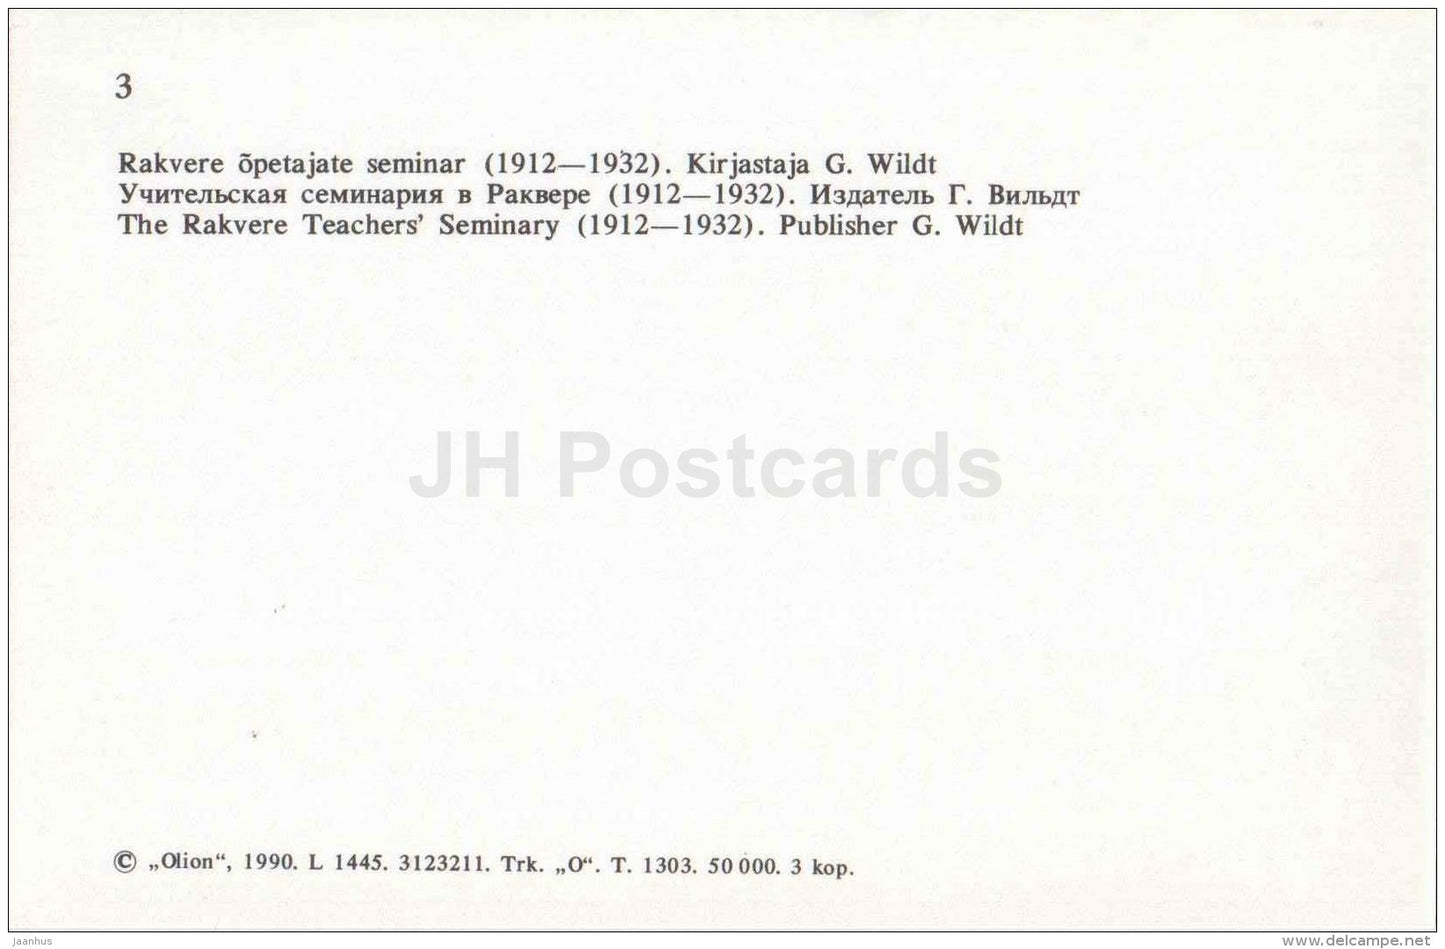 The Rakvere Teacher´s Seminary - Virumaa - OLD POSTCARD REPRODUCTION! - 1990 - Estonia USSR - unused - JH Postcards